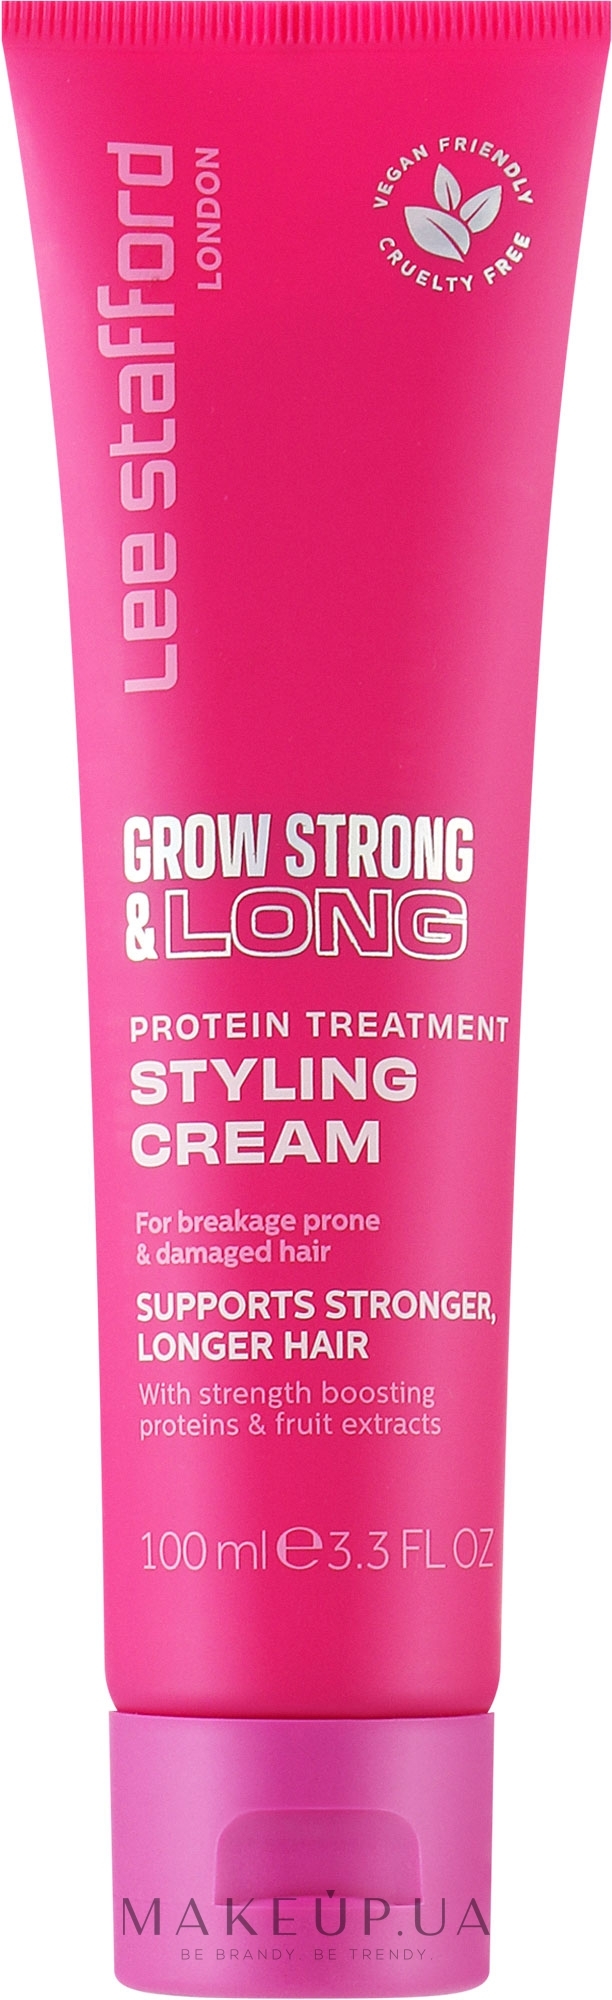 Протеїновий стайлінг-крем для волосся - Lee Stafford Grow Strong & Long Protein Treatment Styling Cream — фото 100ml